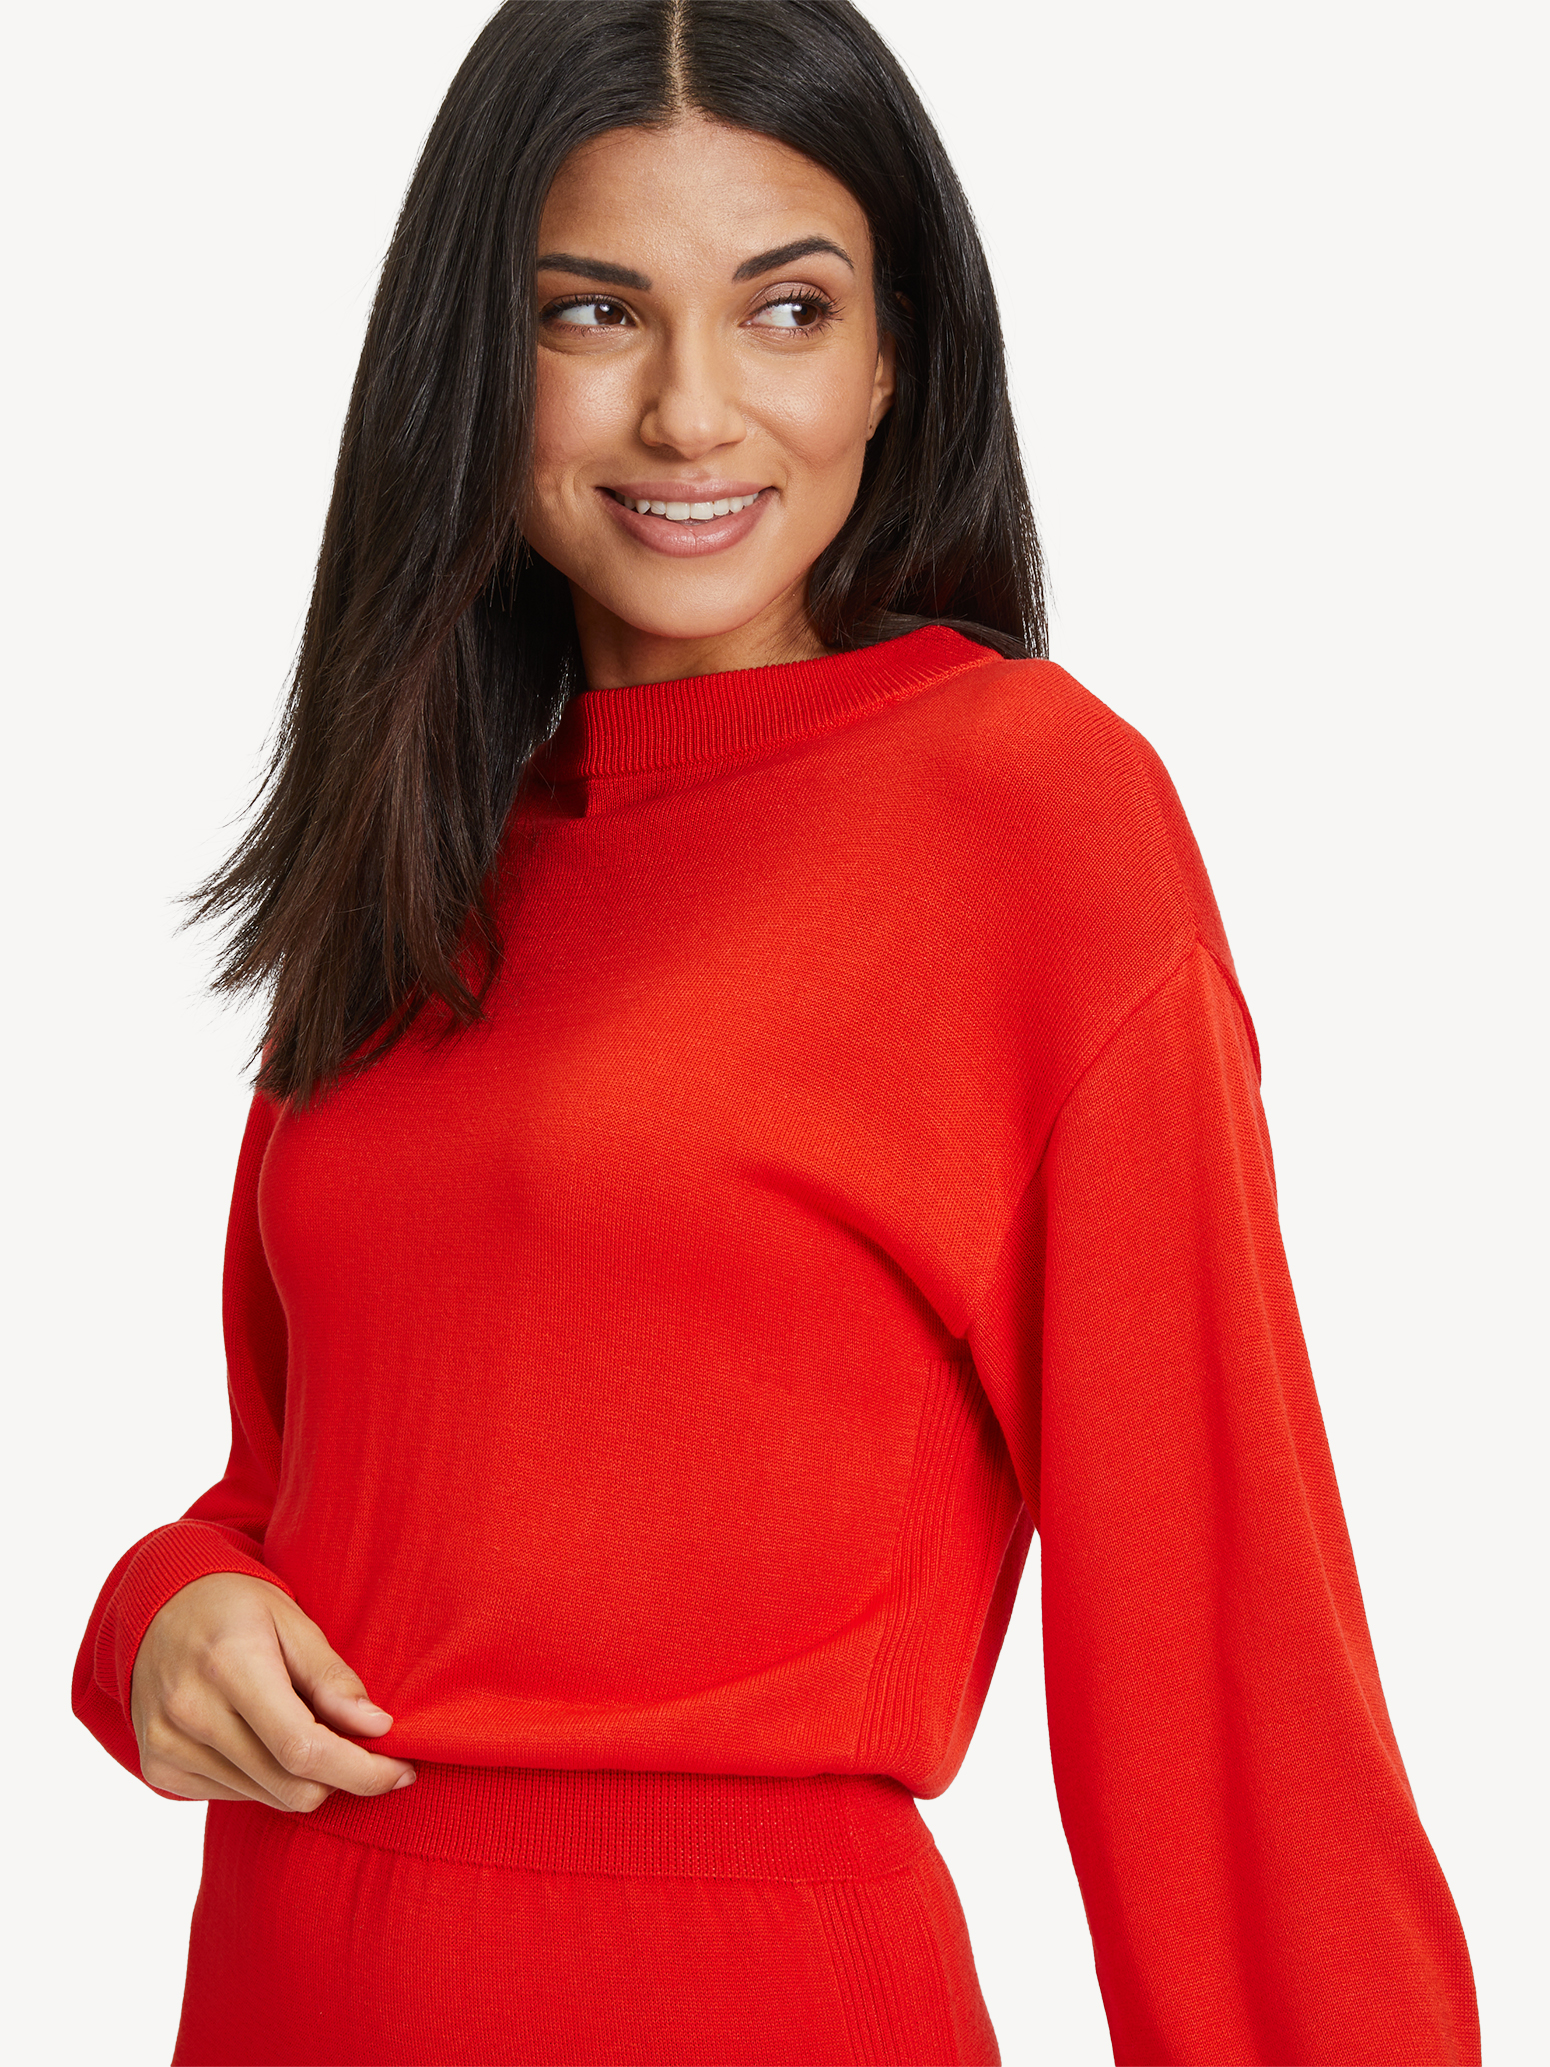 Kleid - rot TAW0329-30042: Tamaris Kleider & Röcke online kaufen!